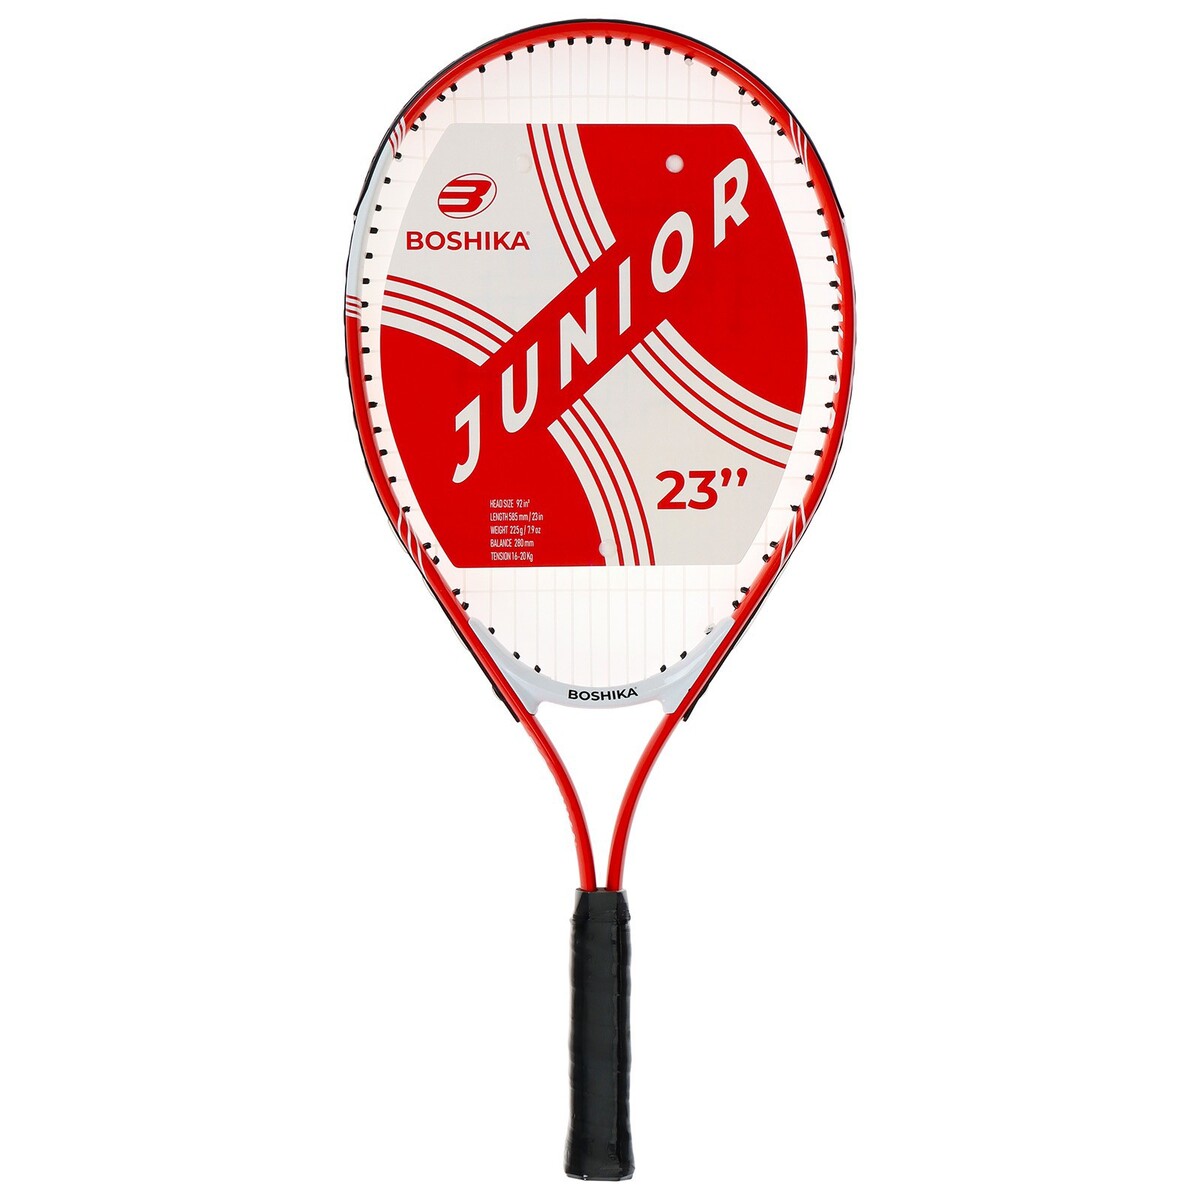 Ракетка для большого тенниса детская boshika junior, алюминий, 23'', цвет красный ракетка для большого тенниса wish alumtec jr 21’’ 2900 голубой